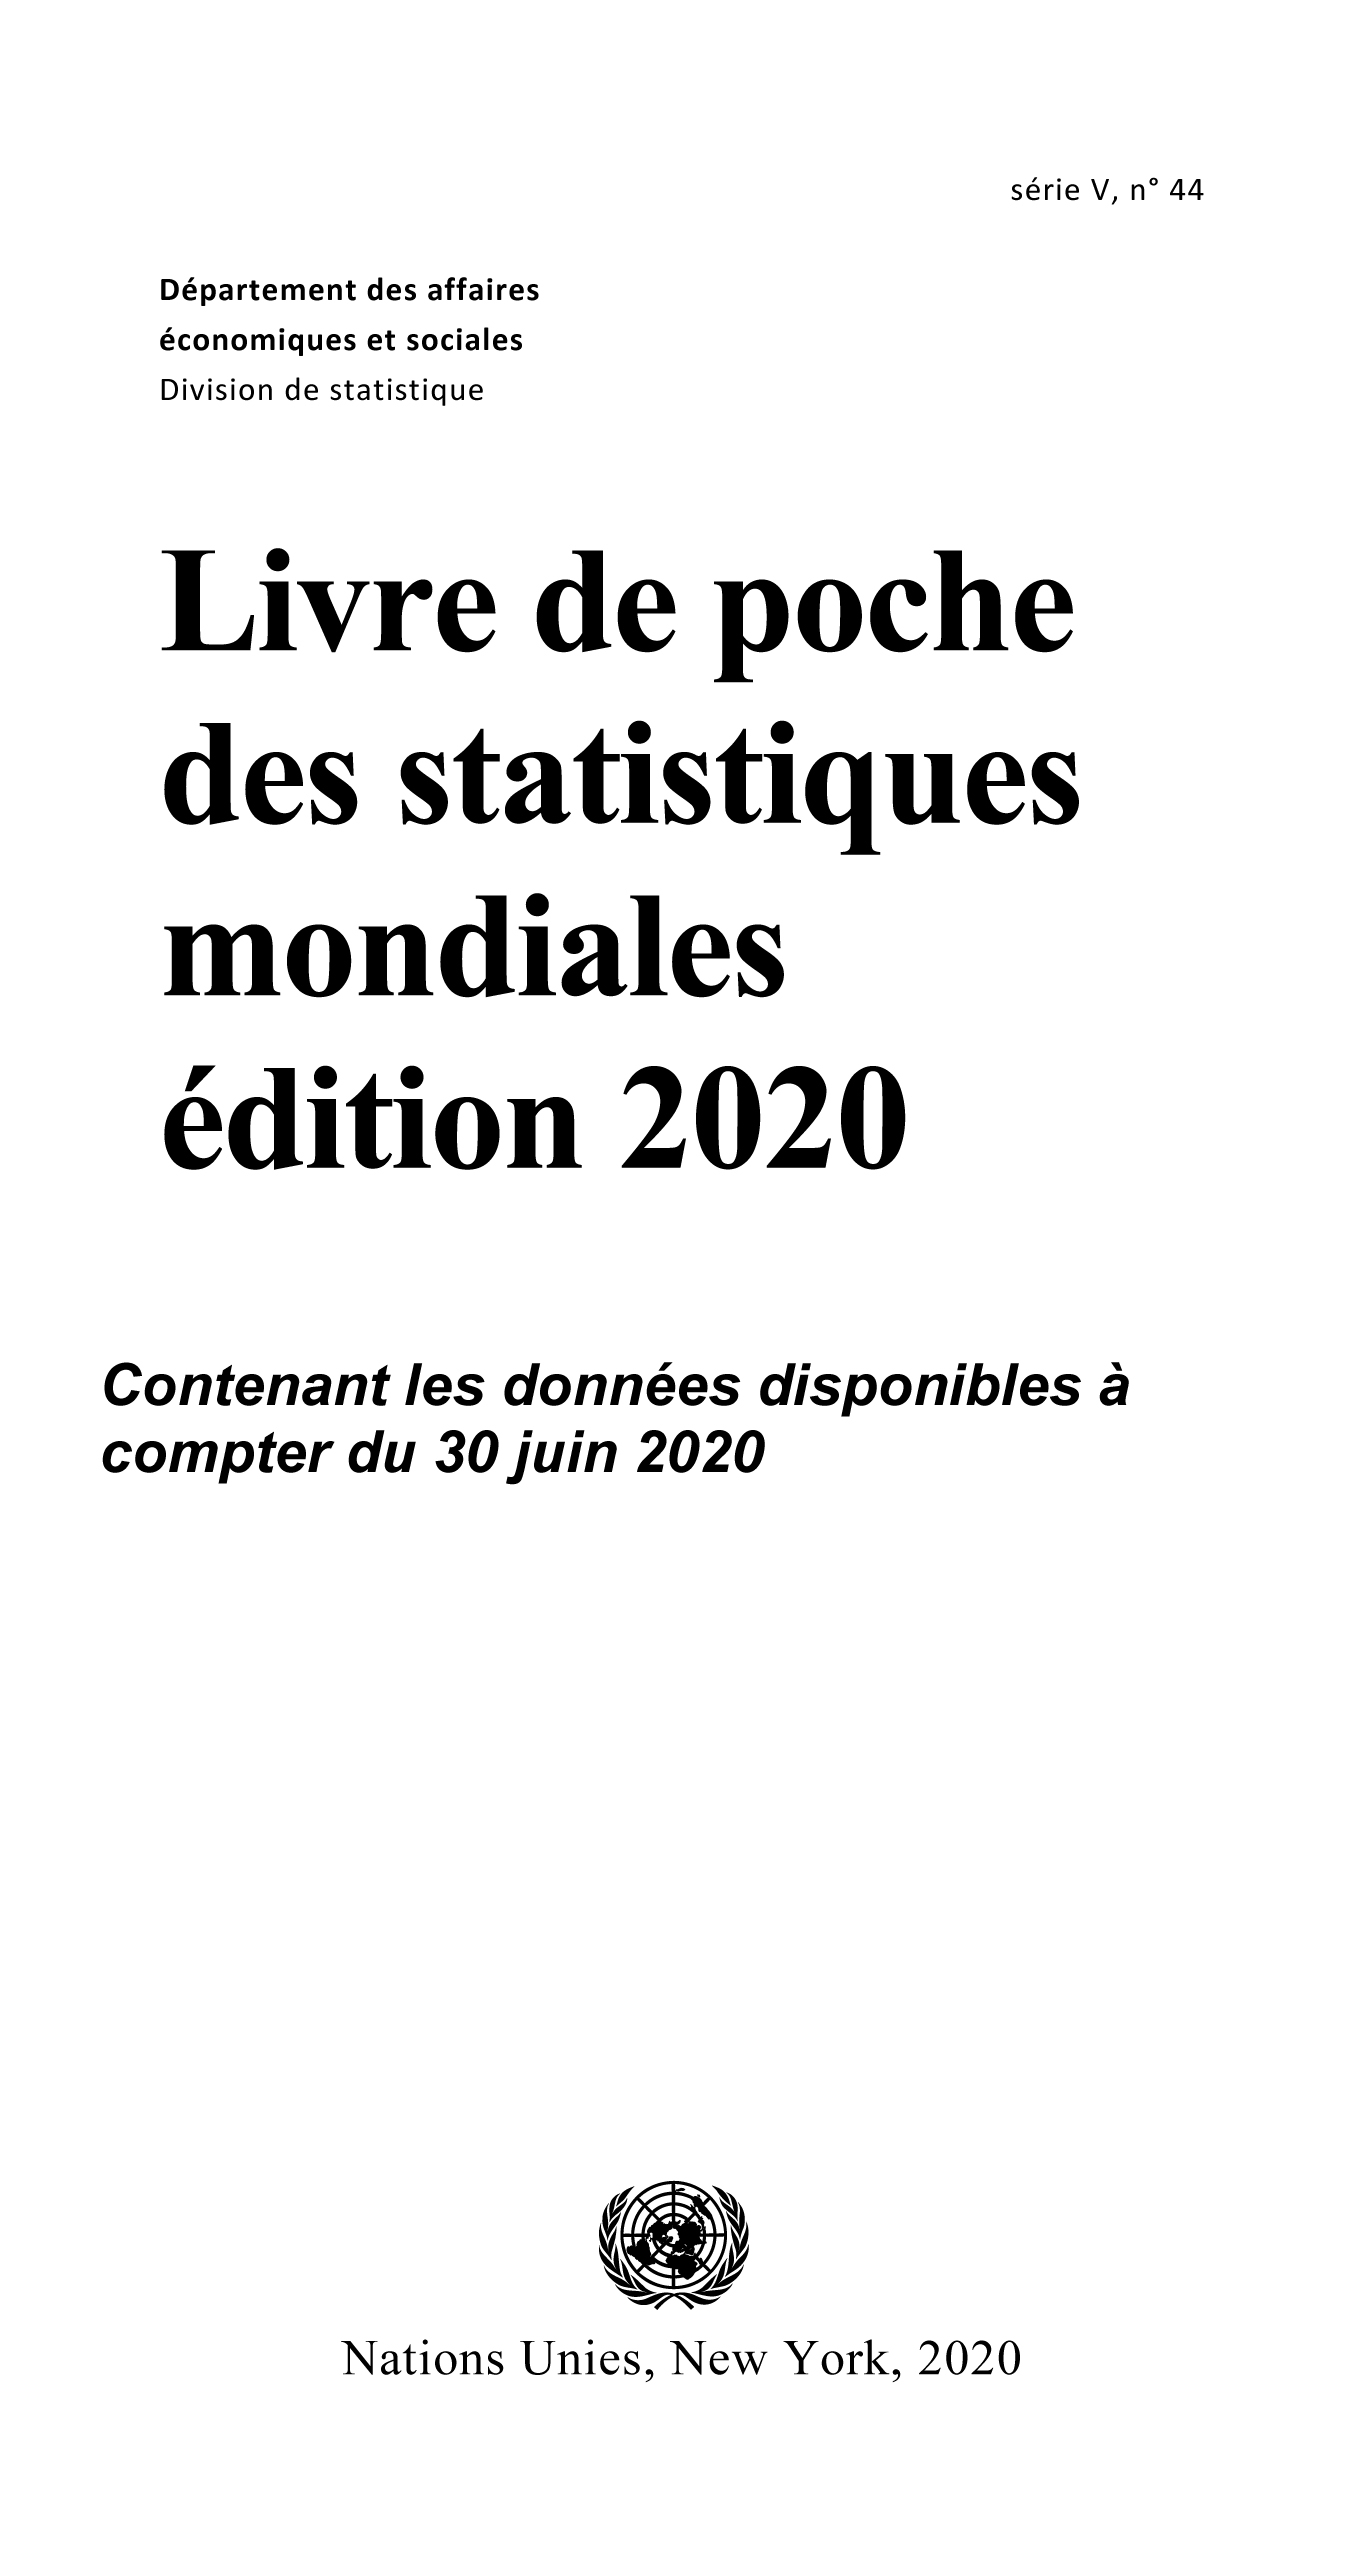 image of Livre de poche des statistiques mondiales 2020